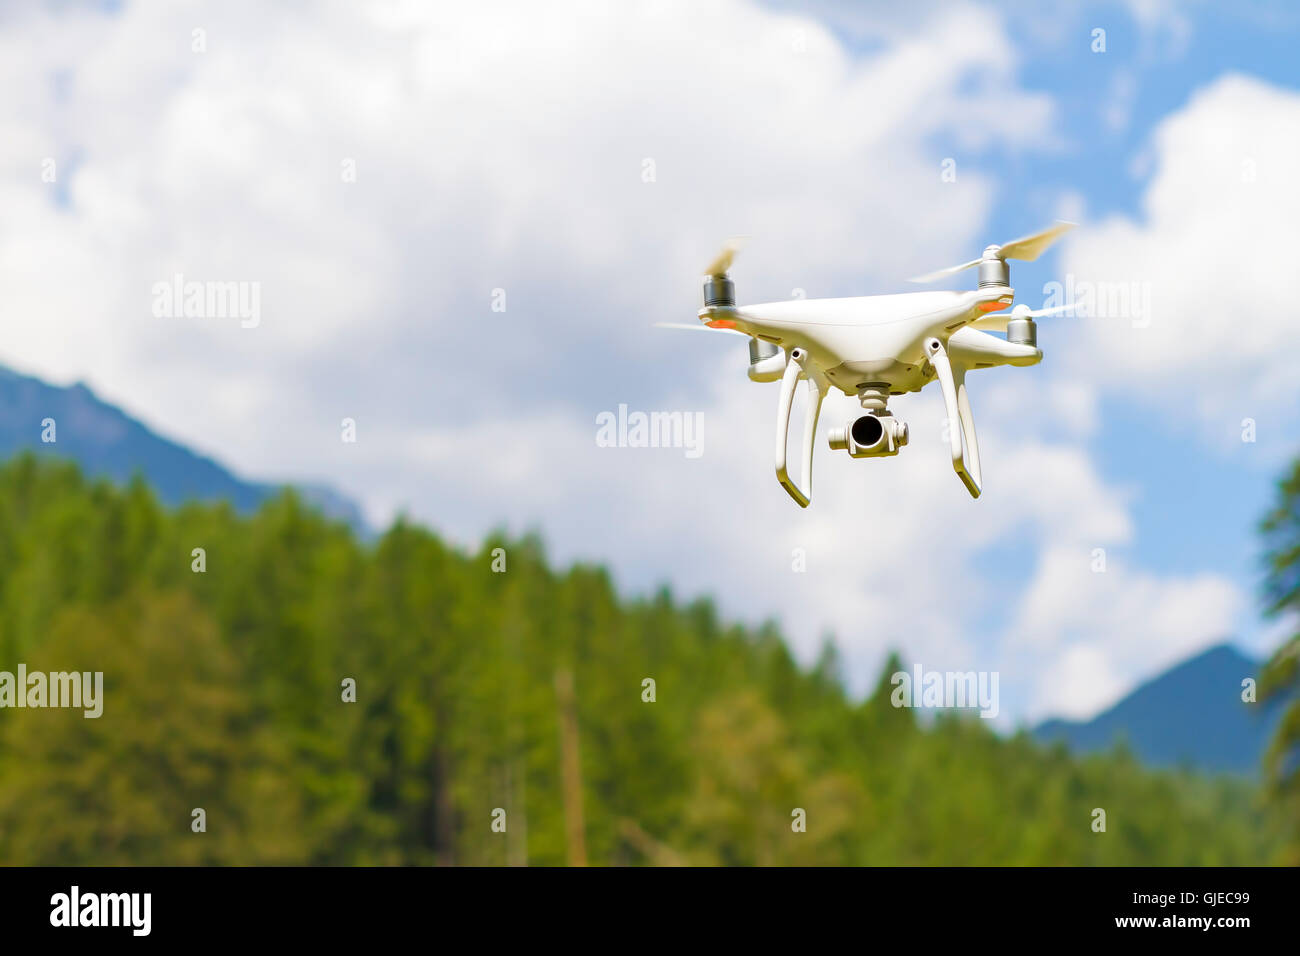 Bourdon blanc quad copter avec appareil photo numérique haute résolution volant dans le ciel bleu sur la montagne Banque D'Images